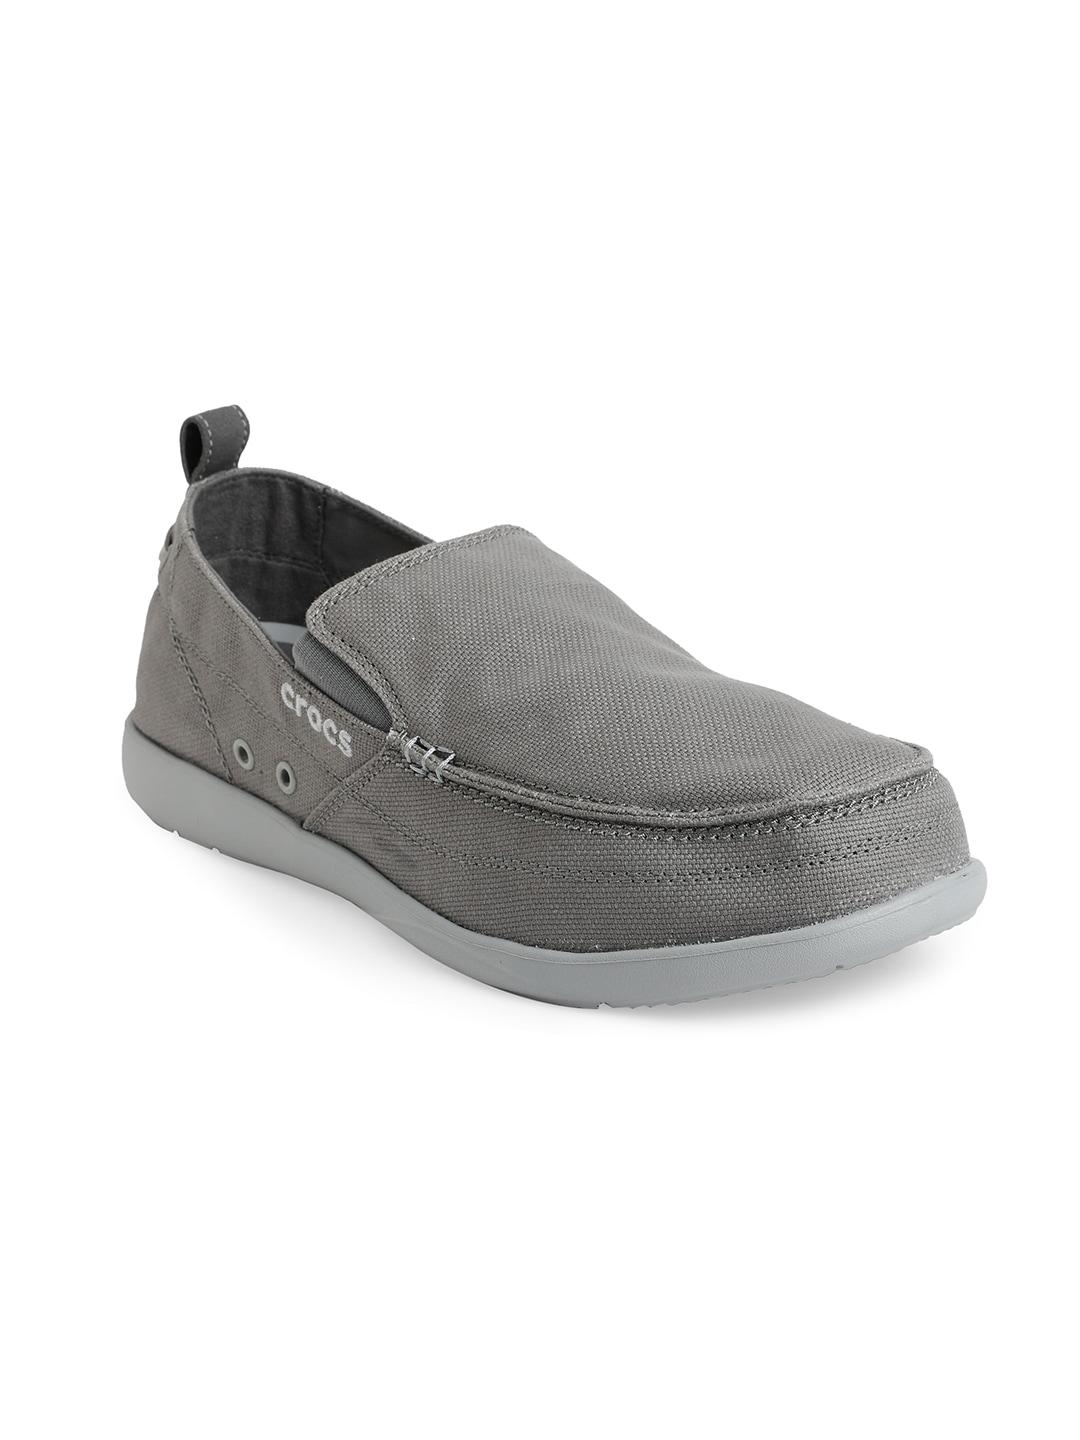 crocs men grey woven design croslite loafers